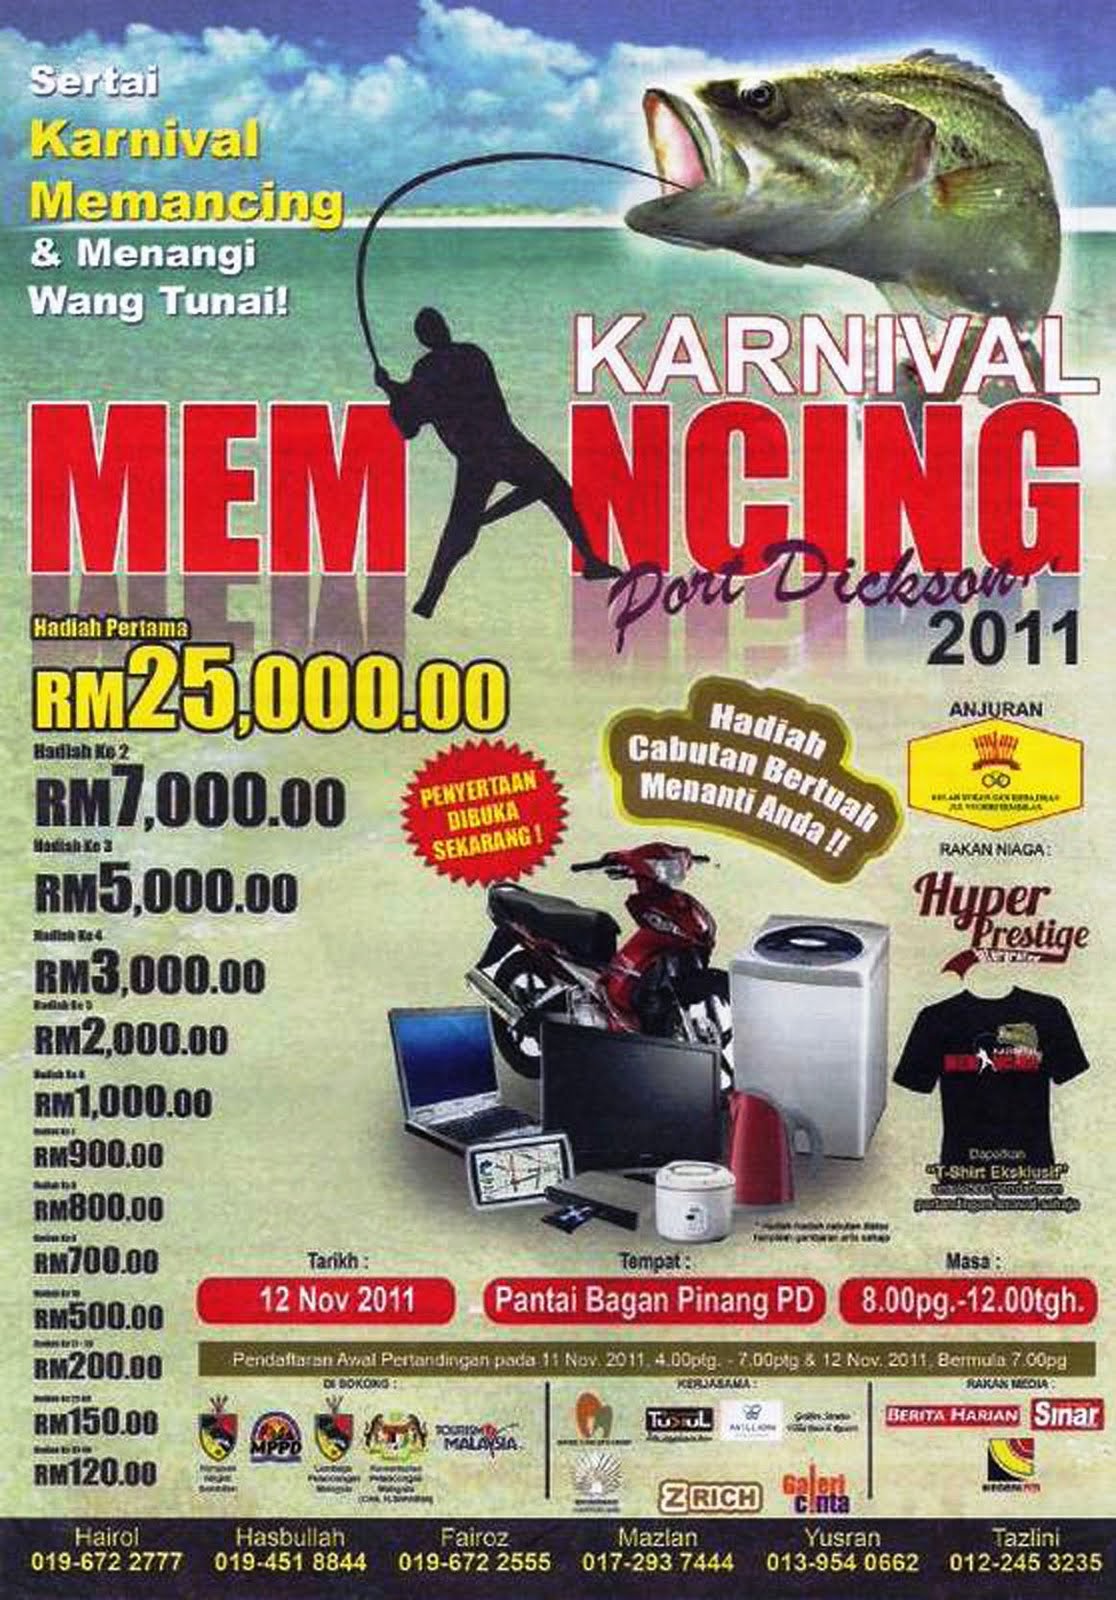 JoranPancing: RM25,000 menanti juara Karnival Memancing 